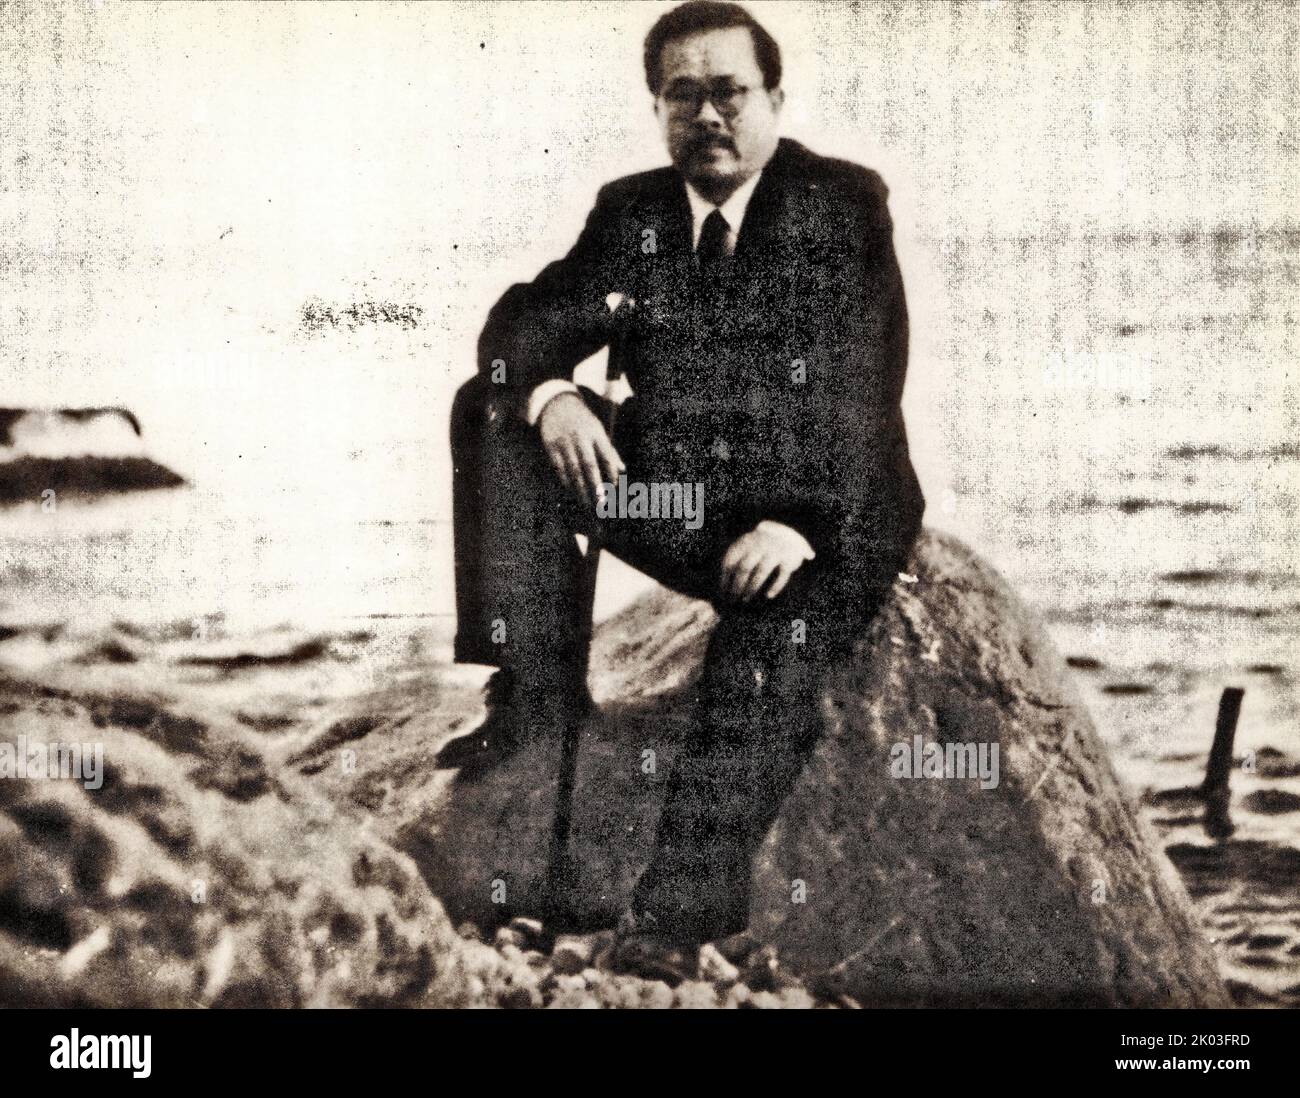 Ren Bishi am Schwarzen Meer. Ren Bishi war ein militärischer und politischer Führer in der frühen Kommunistischen Partei Chinas. Anfang 1930s Stockfoto